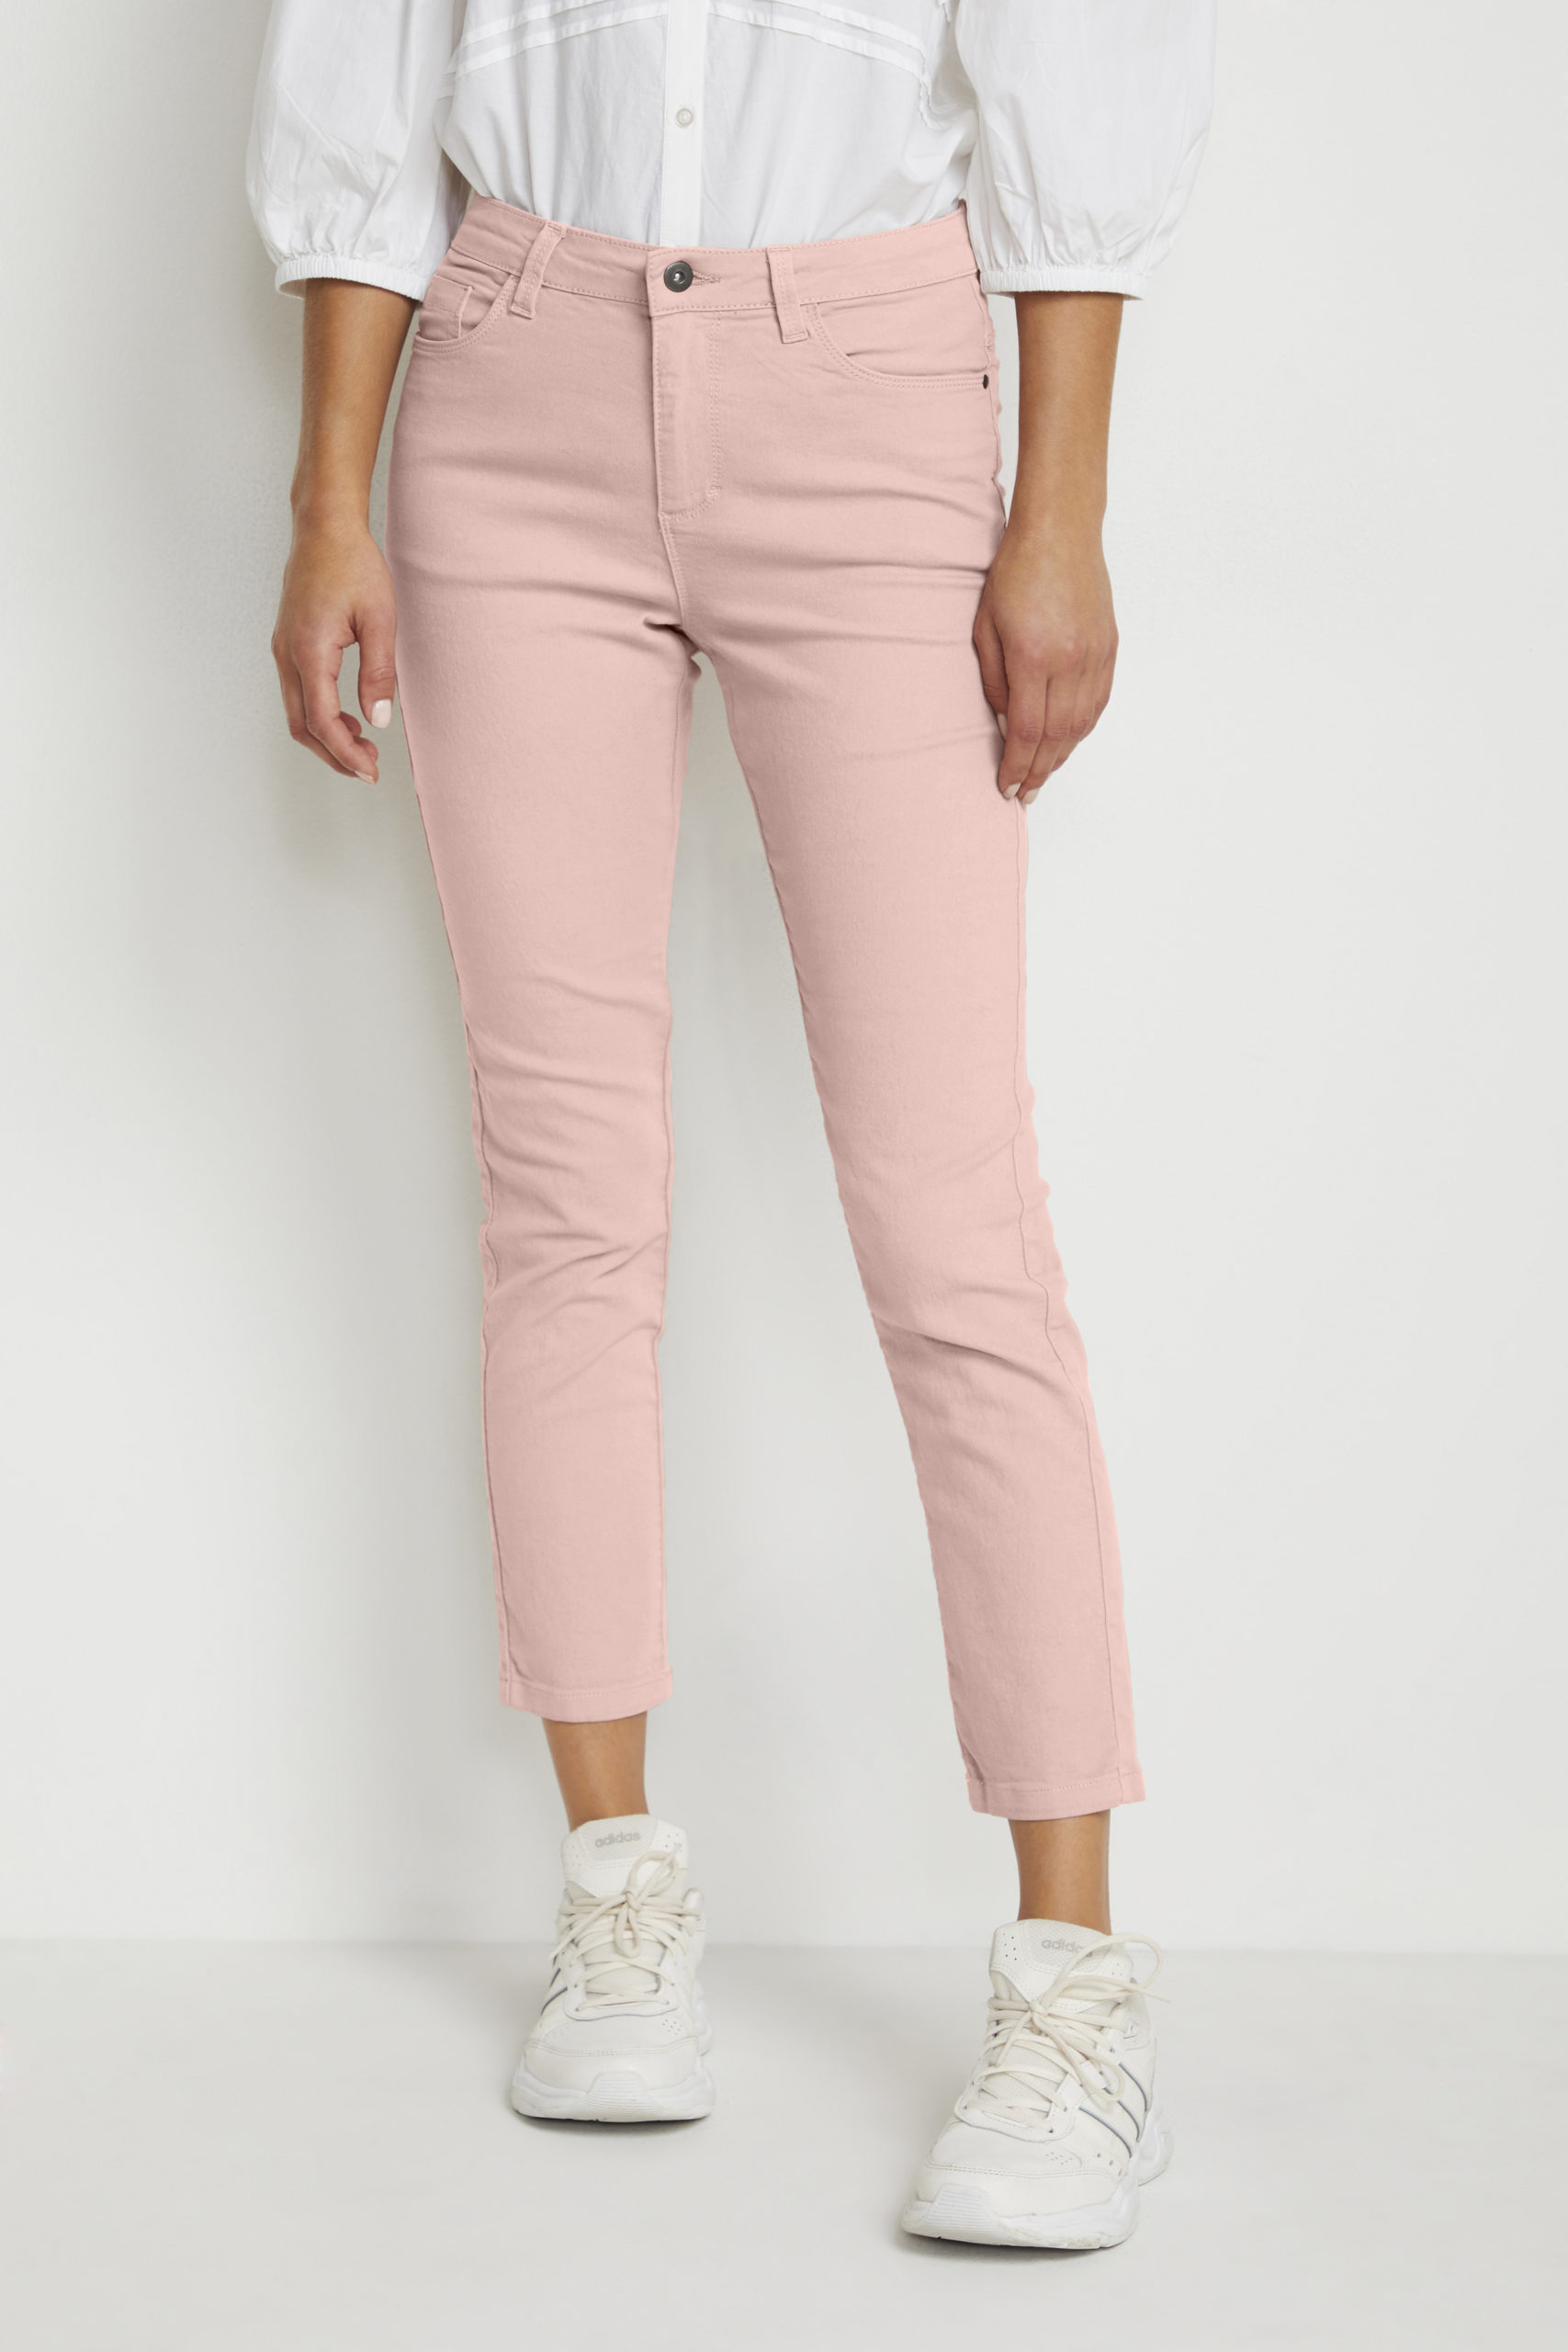 KAzelina Jeans 7/8 rose front